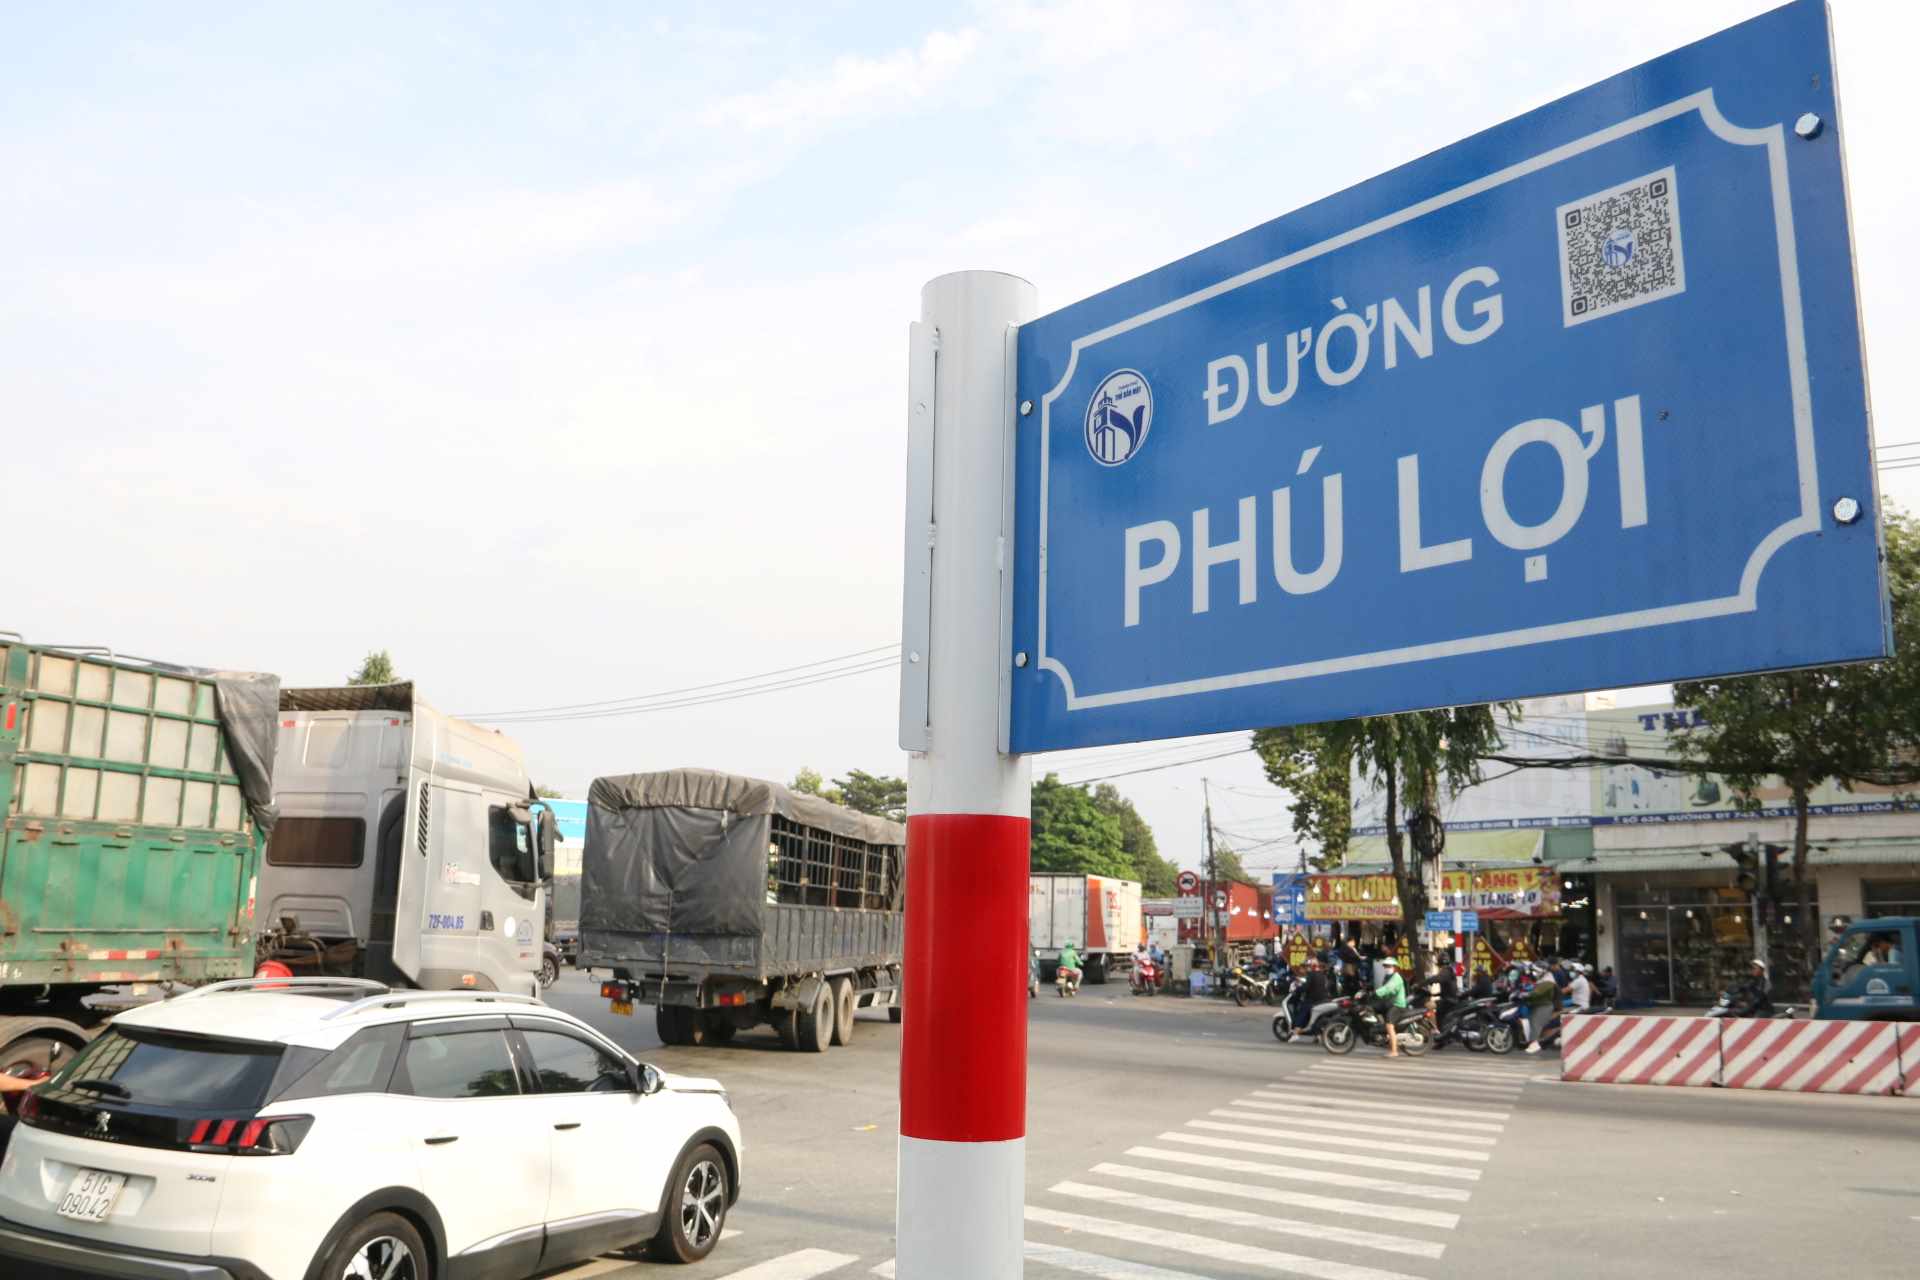 Theo UBND tỉnh Bình Dương, vừa qua người dân ở phường Phú Lợi, thành phố Thủ Dầu Một cũng từng phản ánh về tình hình giao thông tại đây. Người dân kiến nghị tỉnh Bình Dương sớm có kế hoạch xây dựng cầu vượt tại ngã tư. 